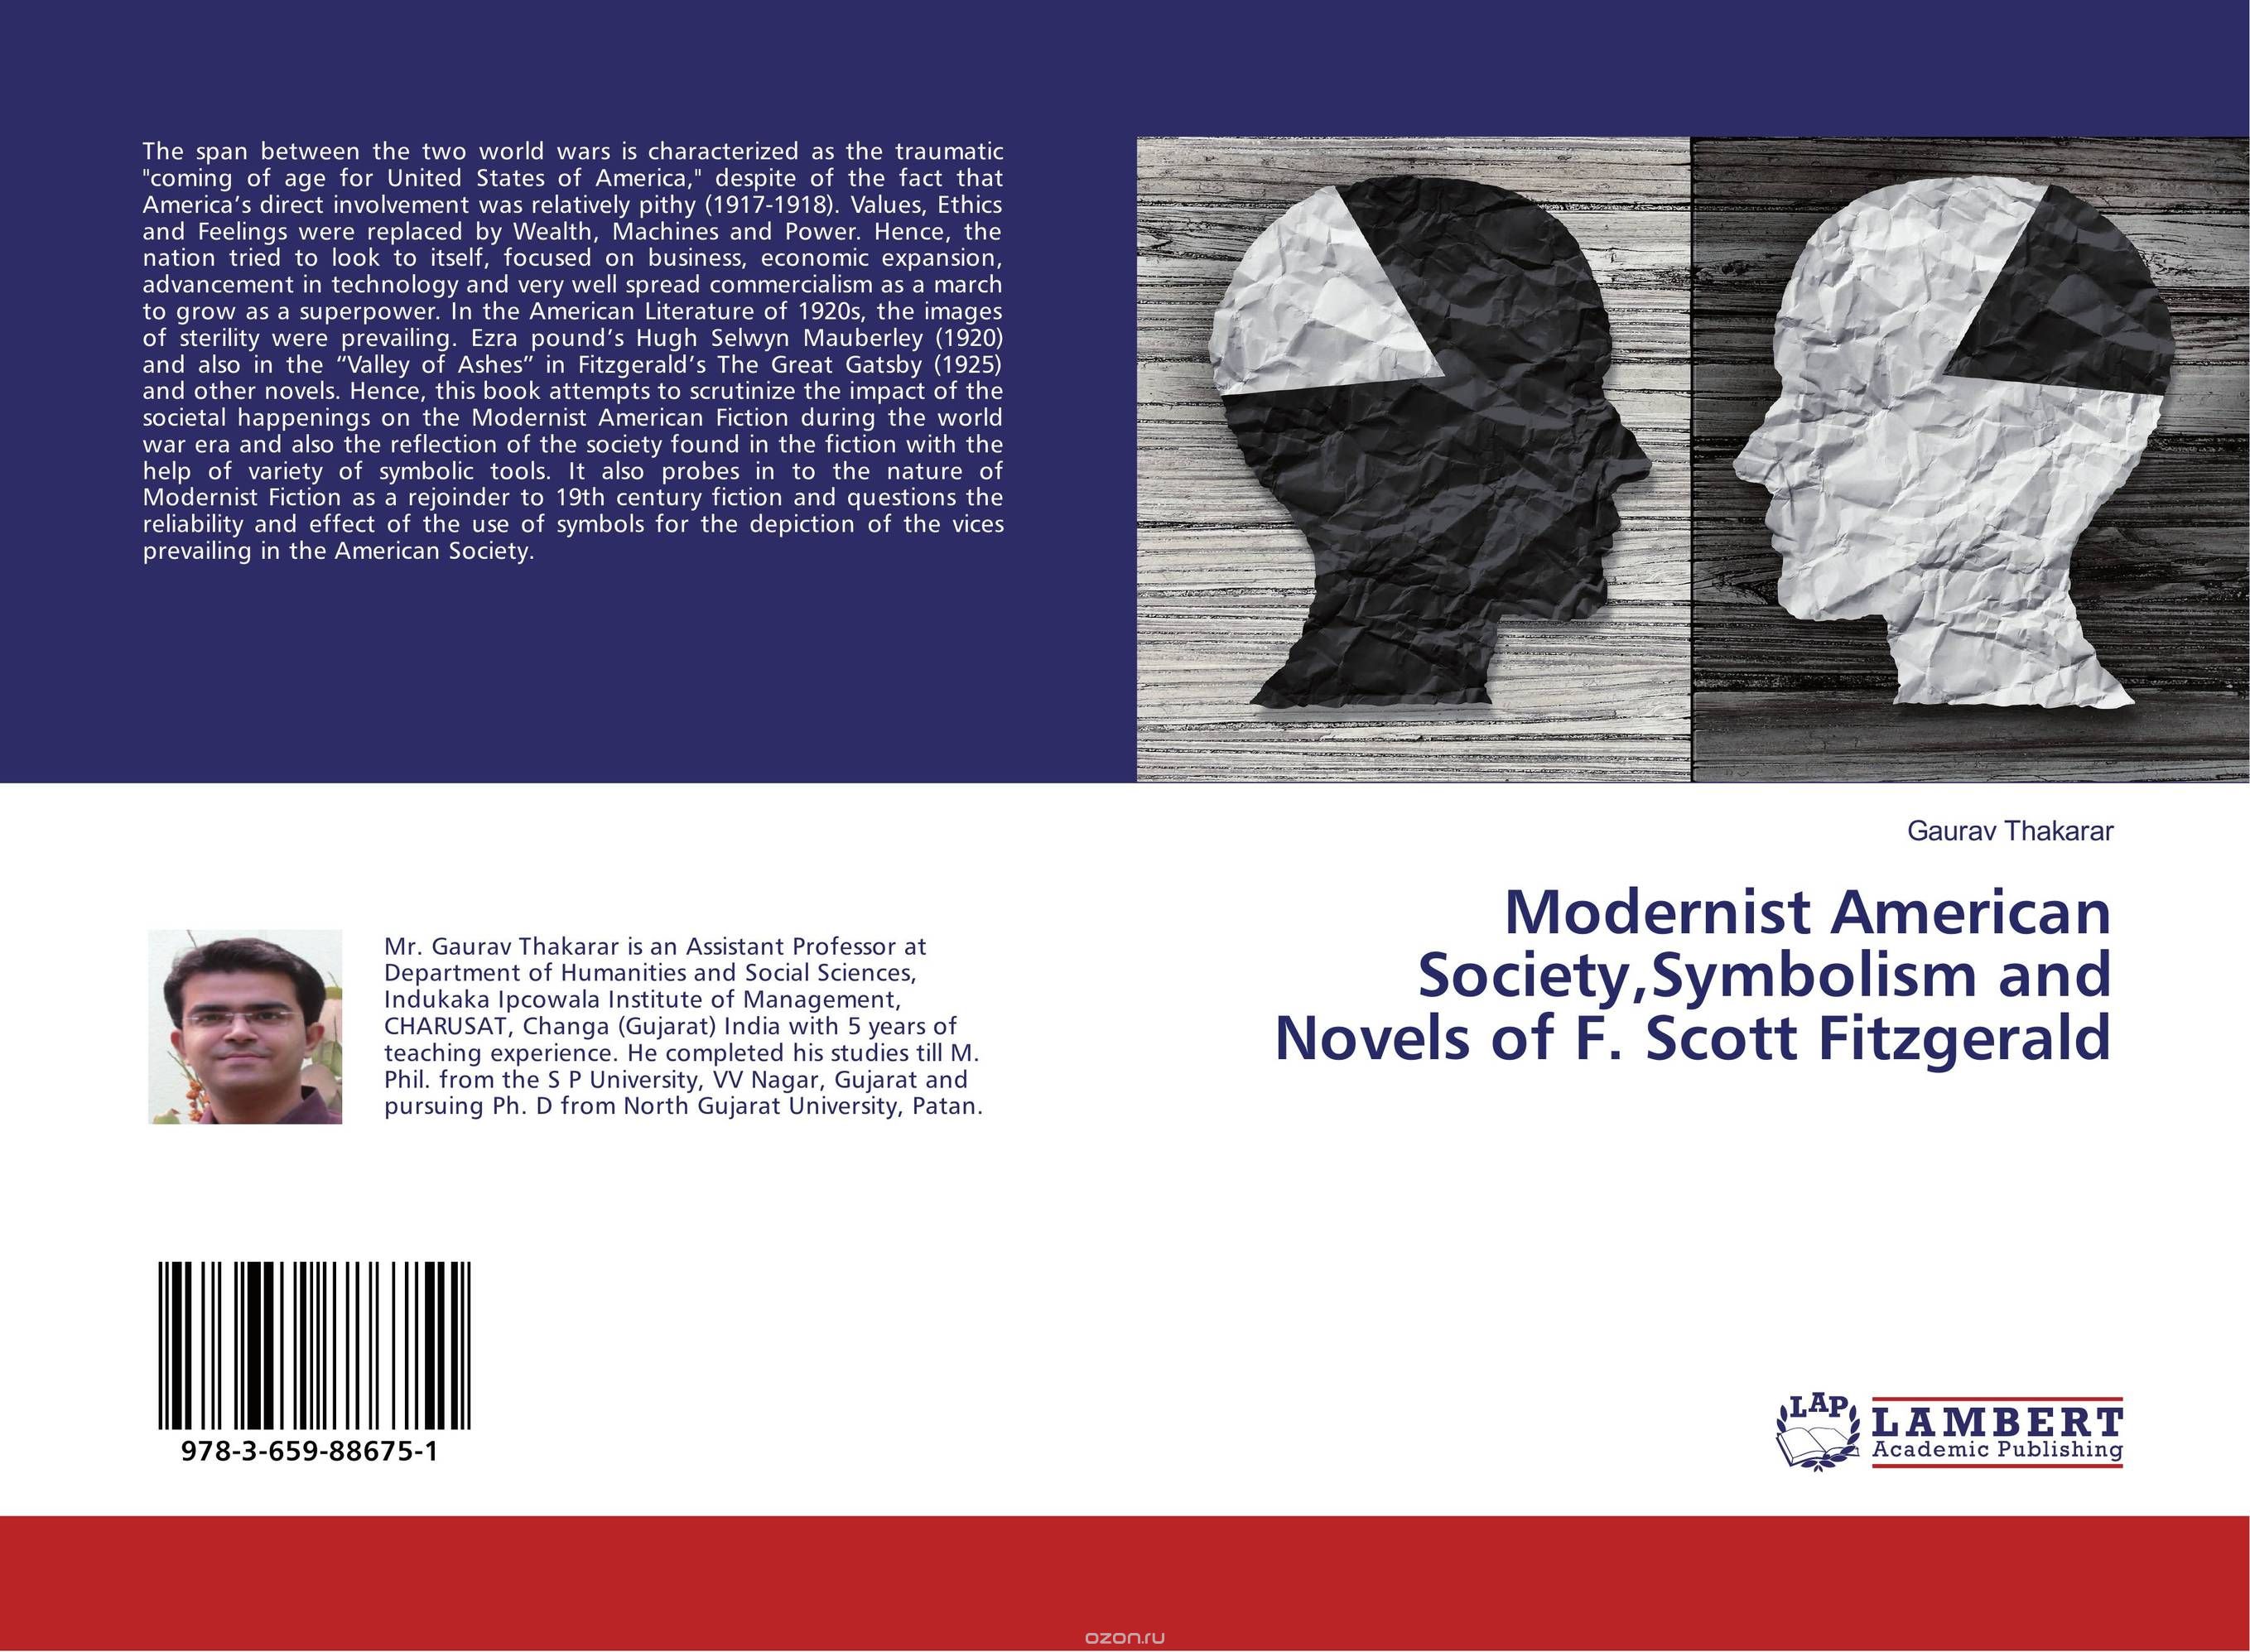 Скачать книгу "Modernist American Society,Symbolism and Novels of F. Scott Fitzgerald"